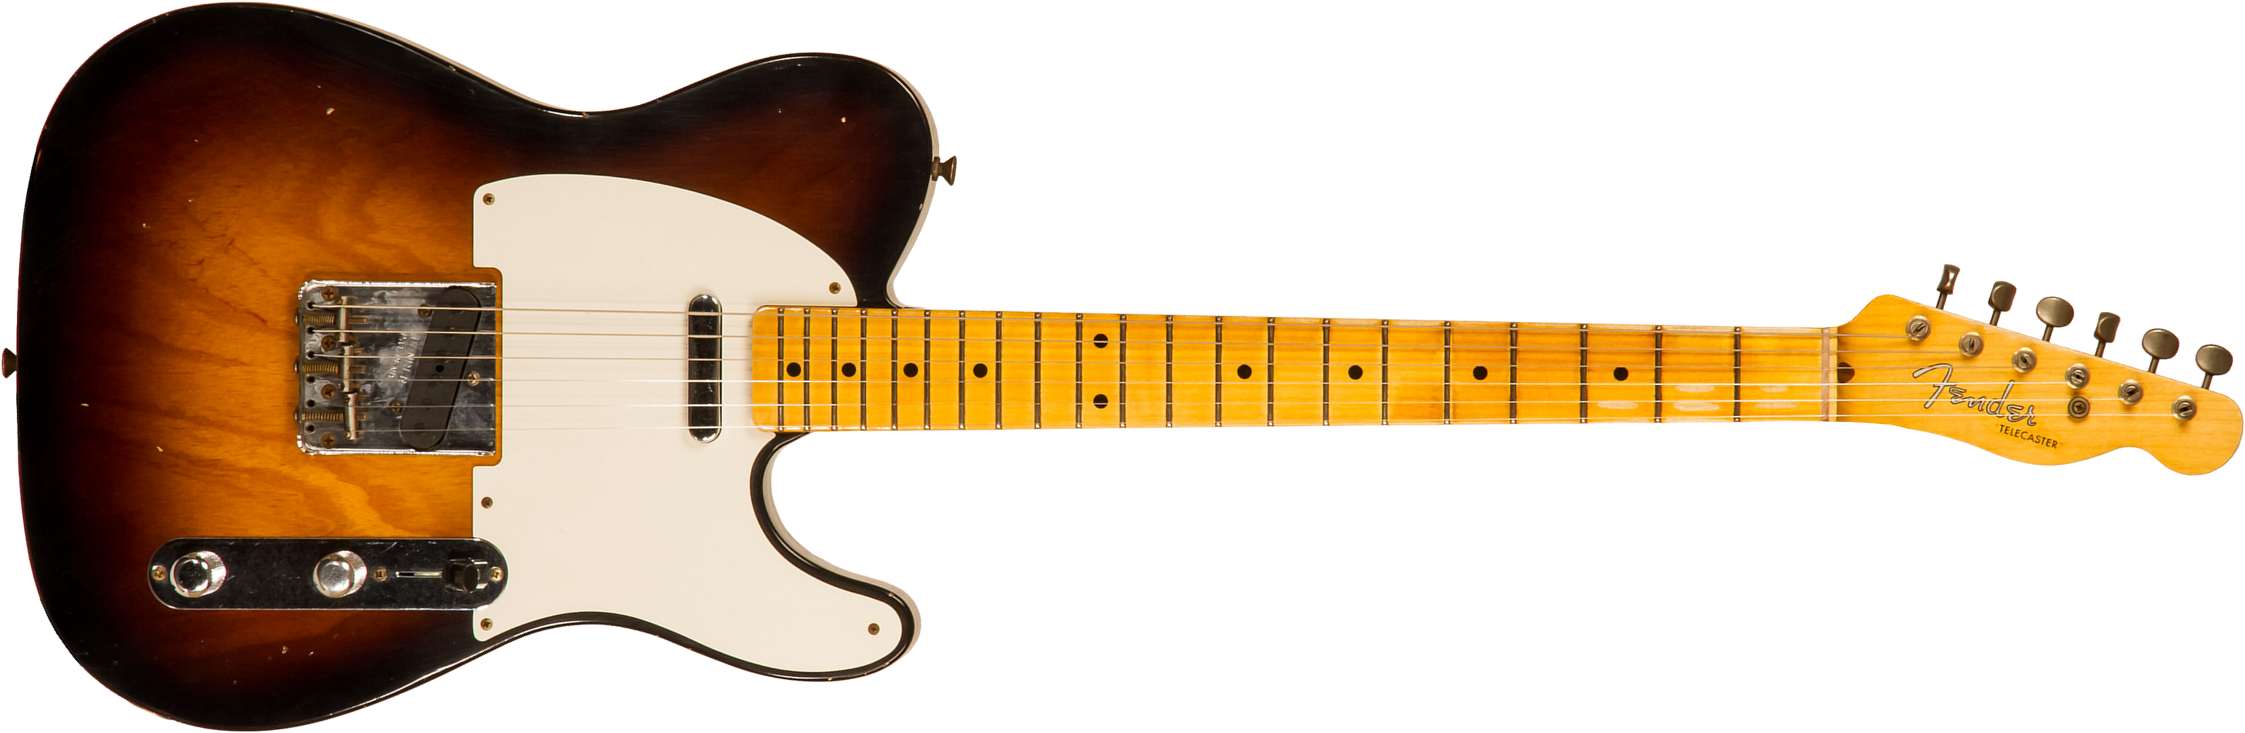 Fender Custom Shop Tele 1955 Ltd 2s Ht Mn #cz560649 - Relic Wide Fade 2-color Sunburst - E-Gitarre in Teleform - Main picture